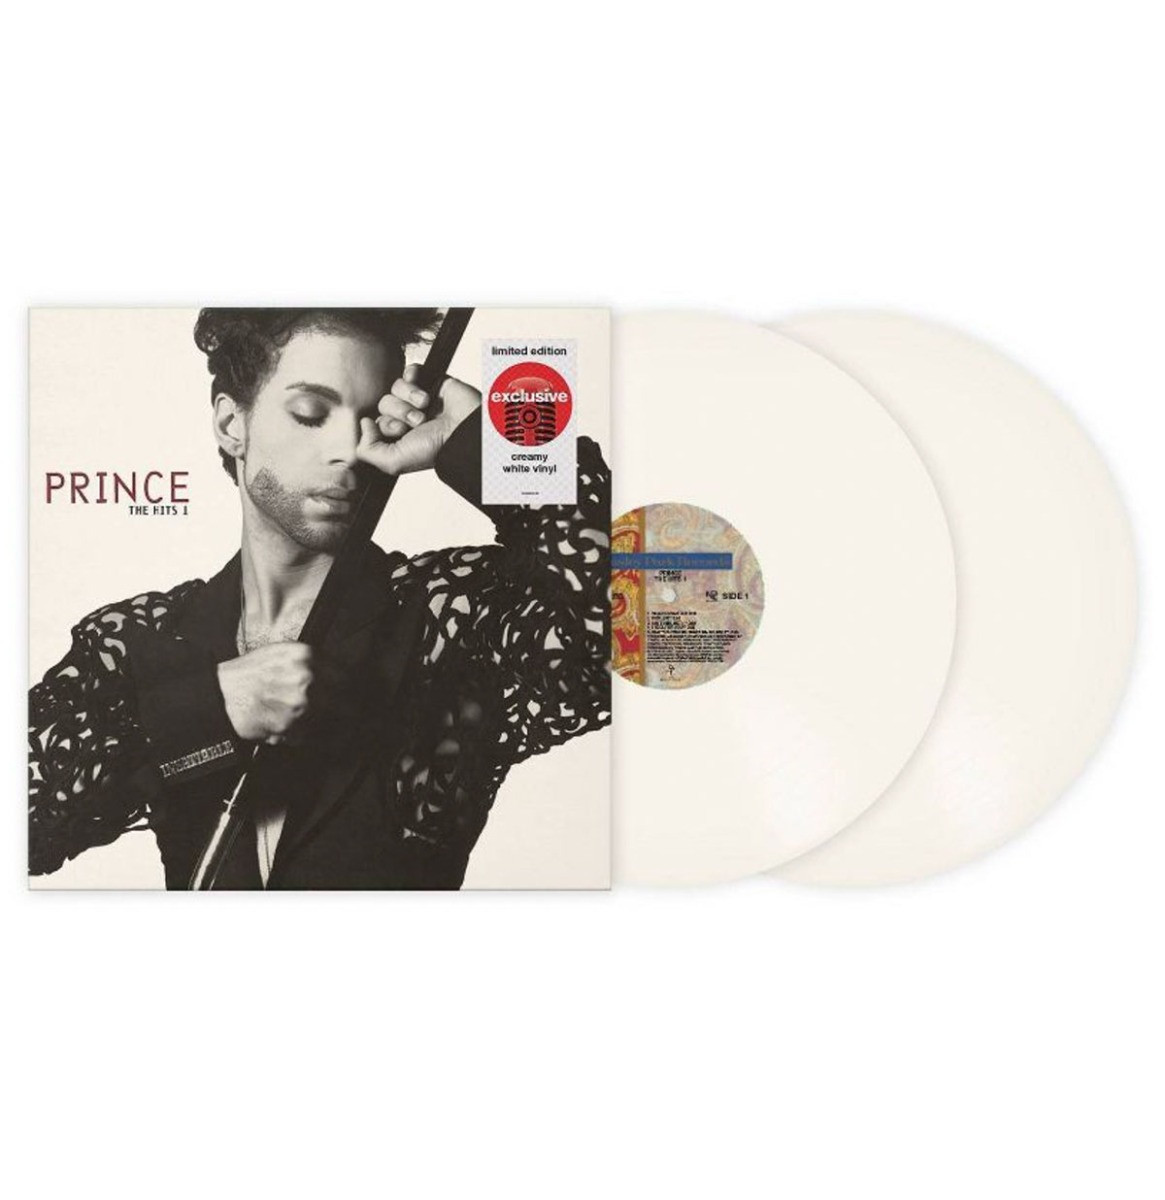 Prince - The Hits 1 (Gekleurd Vinyl) (Target Exclusive) LP